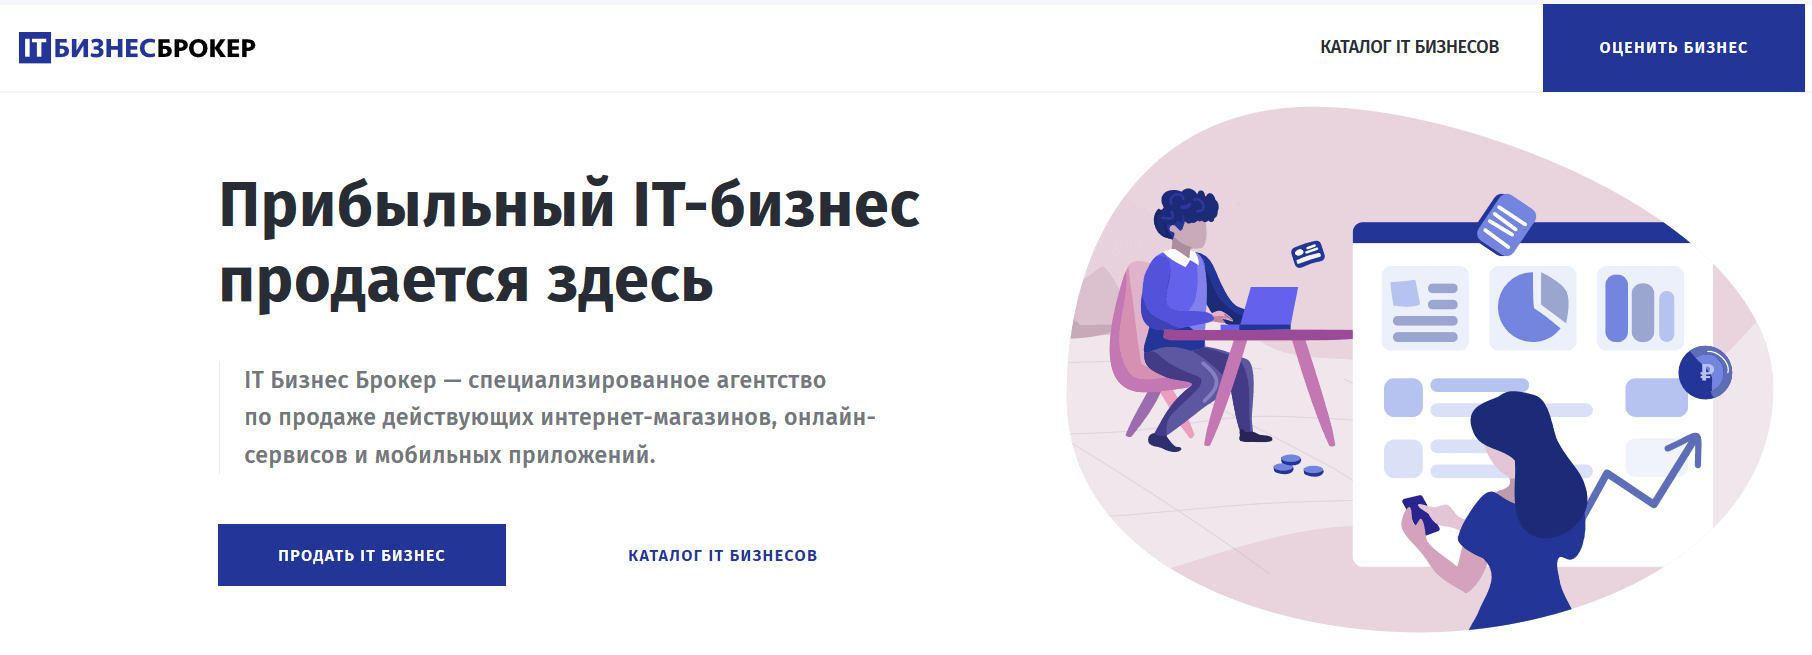 Как открыть интернет-магазин. сколько стоит открыть интернет-магазин, и выгодно ли это? :: businessman.ru